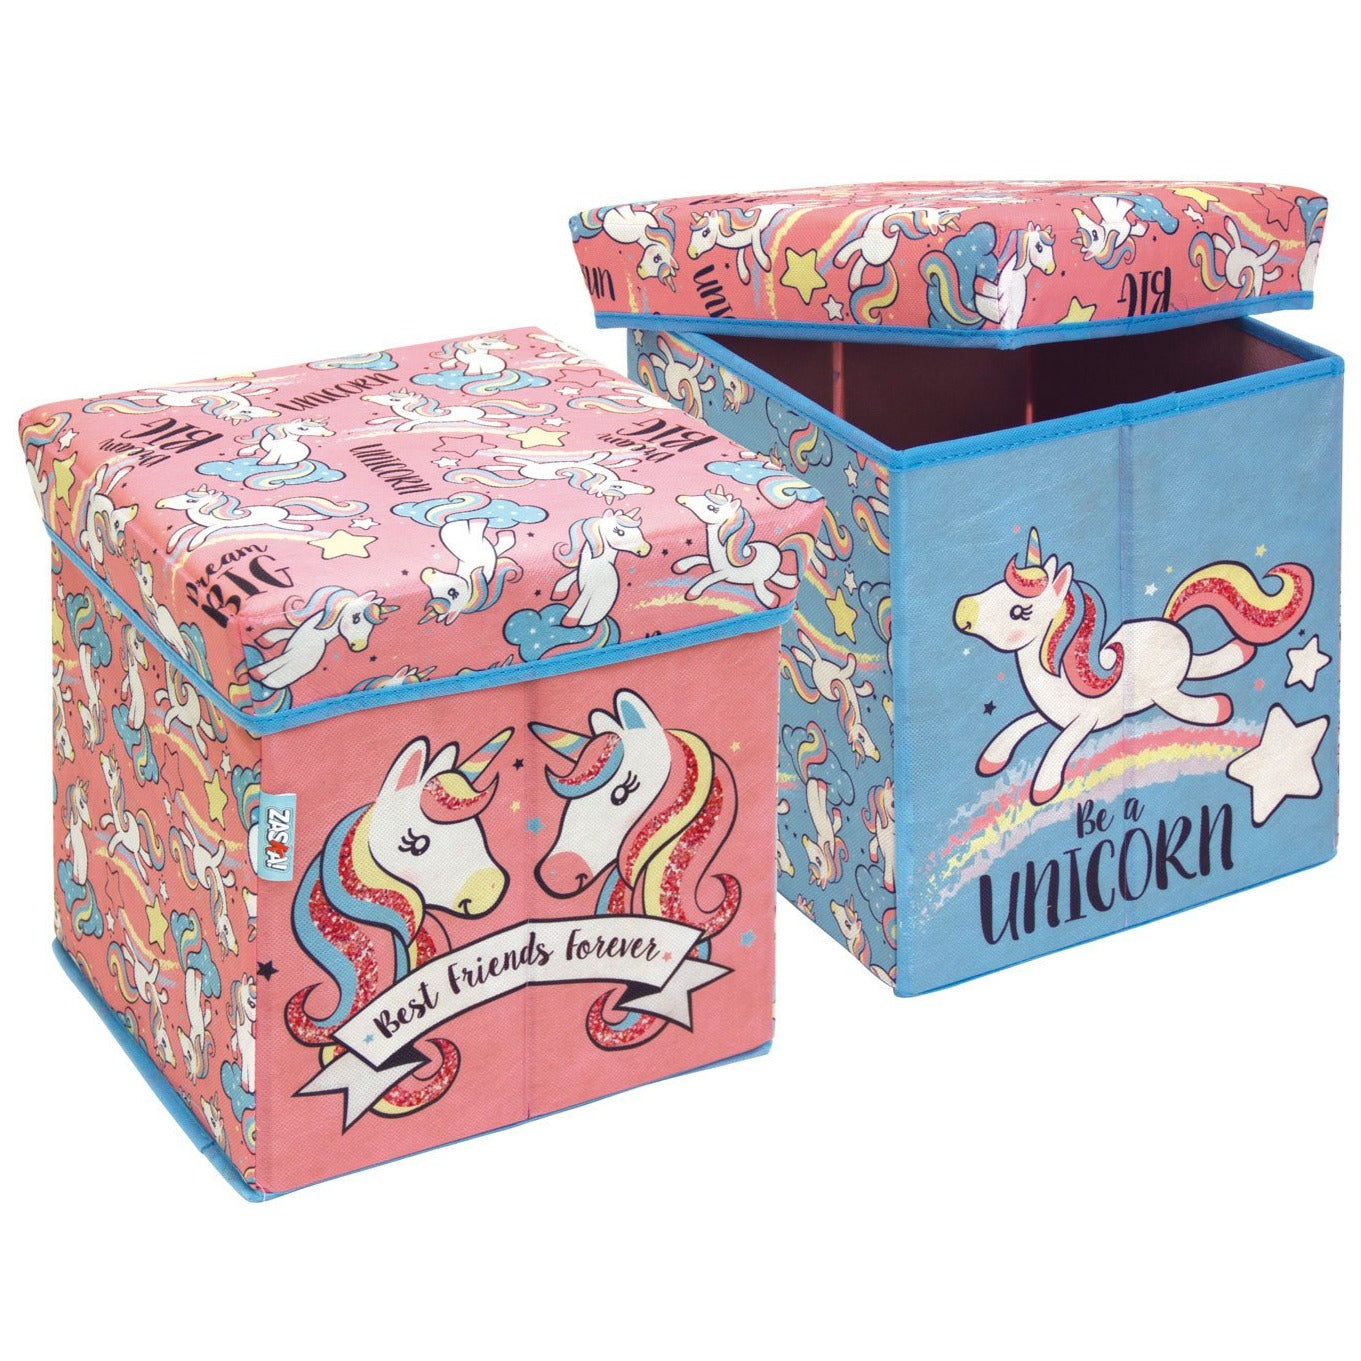 Unicorn Fabric Storage Bin With Stool by Zaska